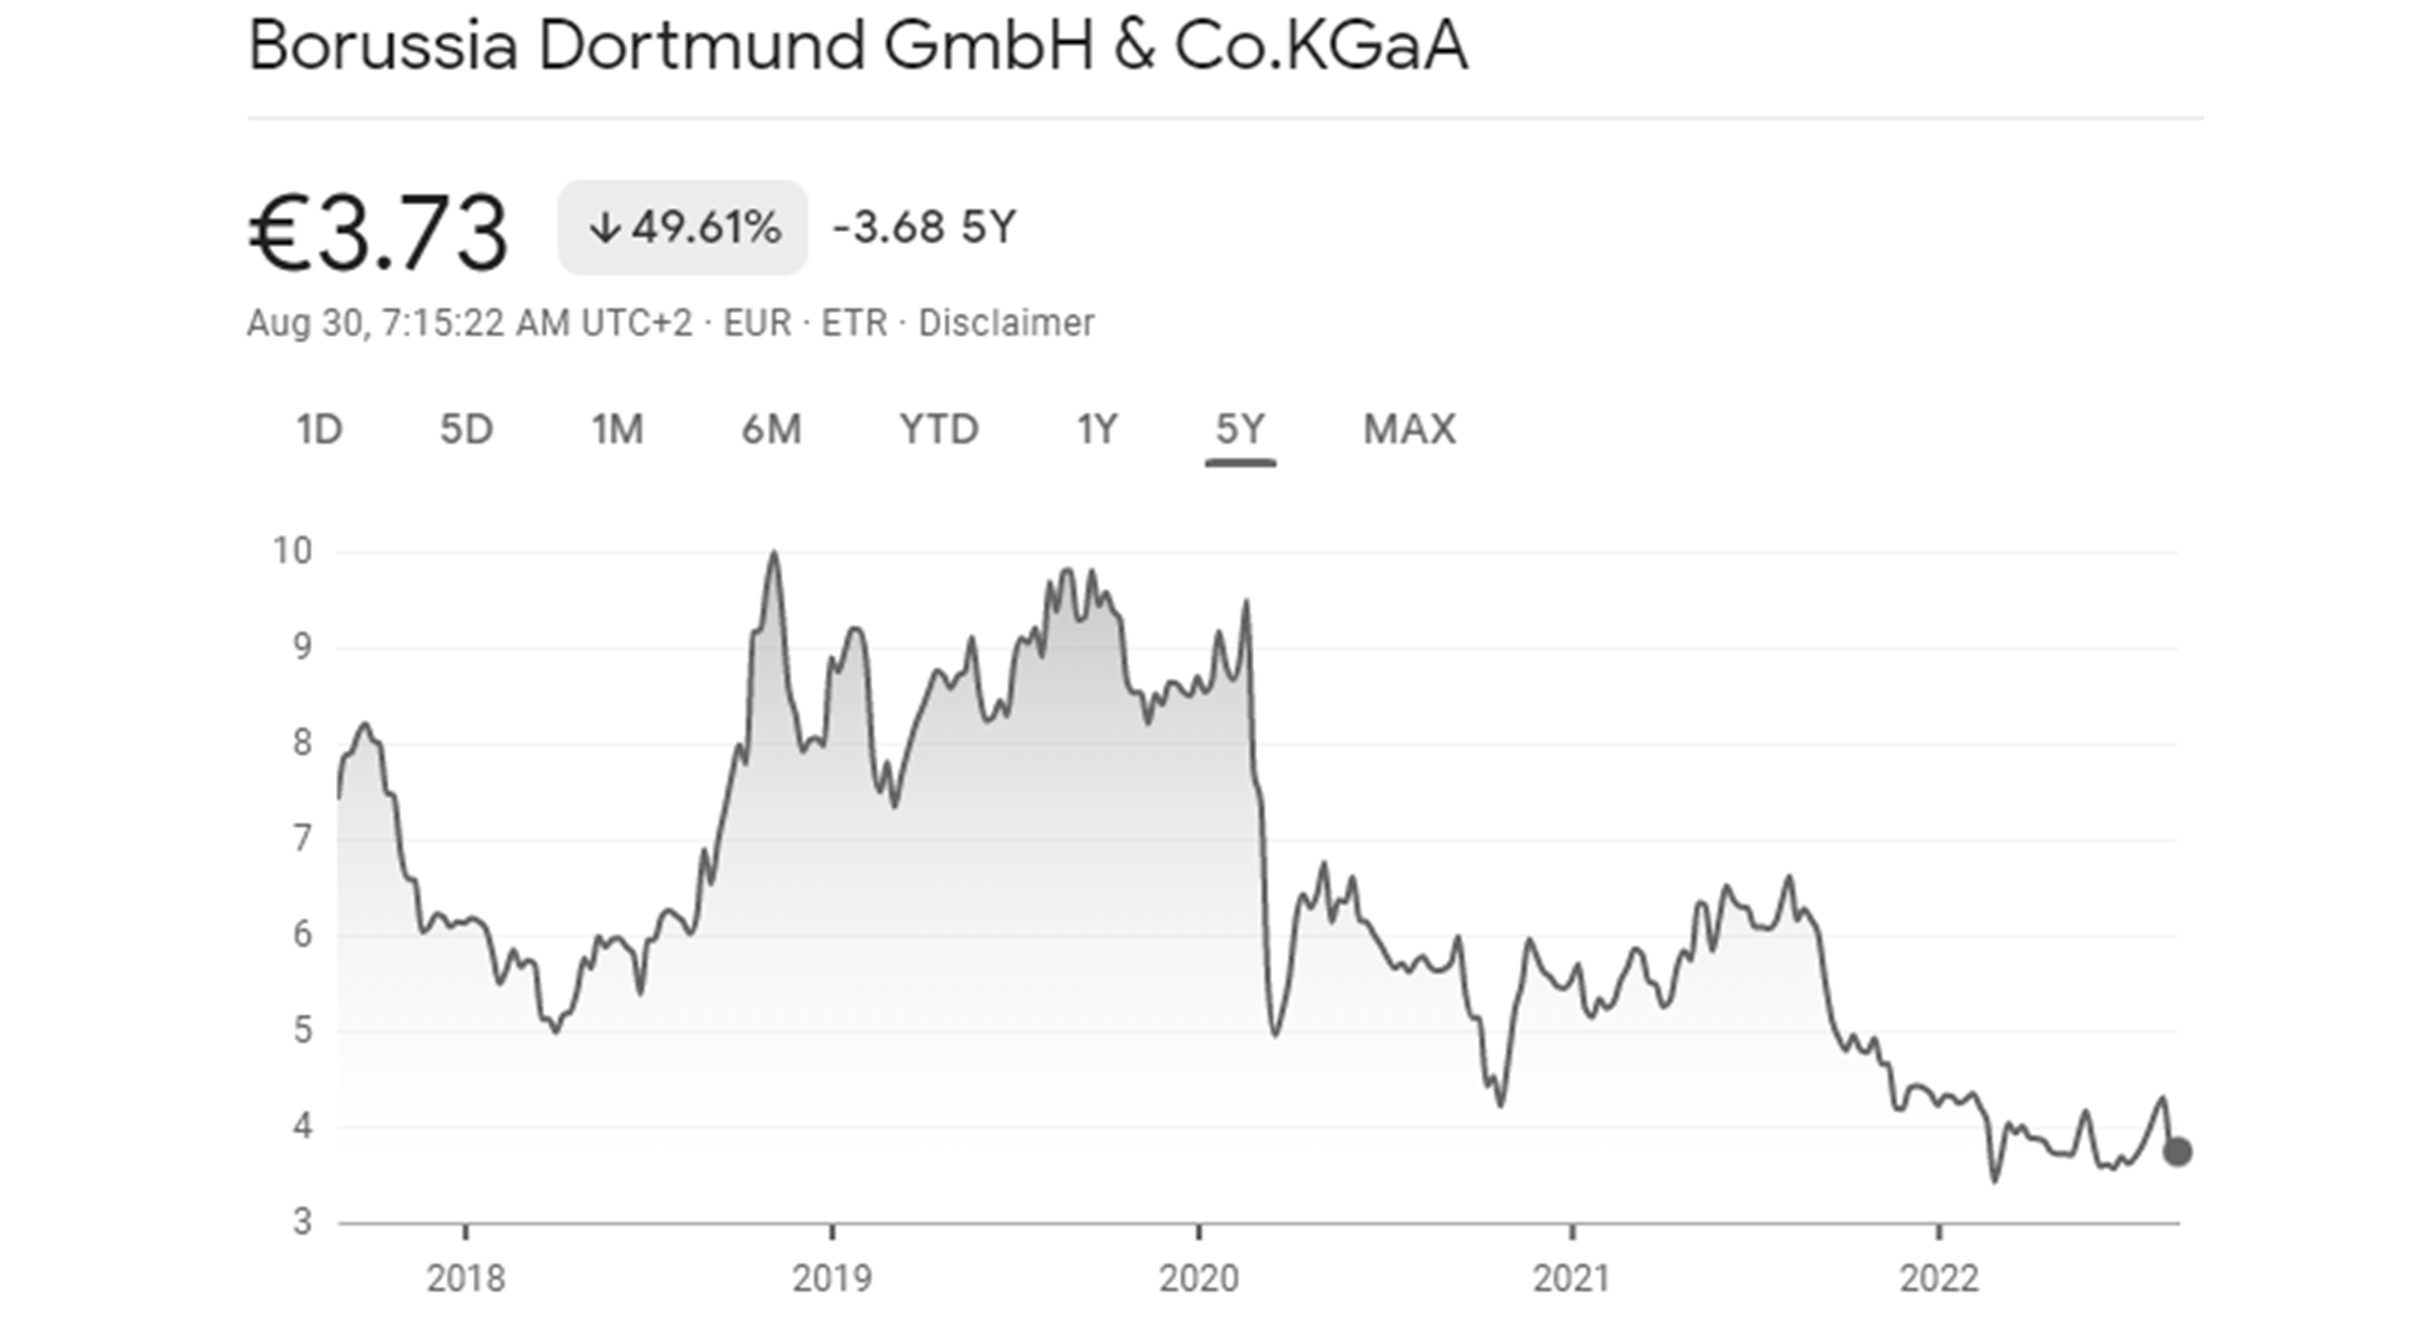 หุ้น Borussia Dortmund หรือสโมสรโบรุสเซีย ดอร์ทมุนด์ที่ซื้อขายในตลาดหลักทรัพย์ฯ ในเยอรมัน